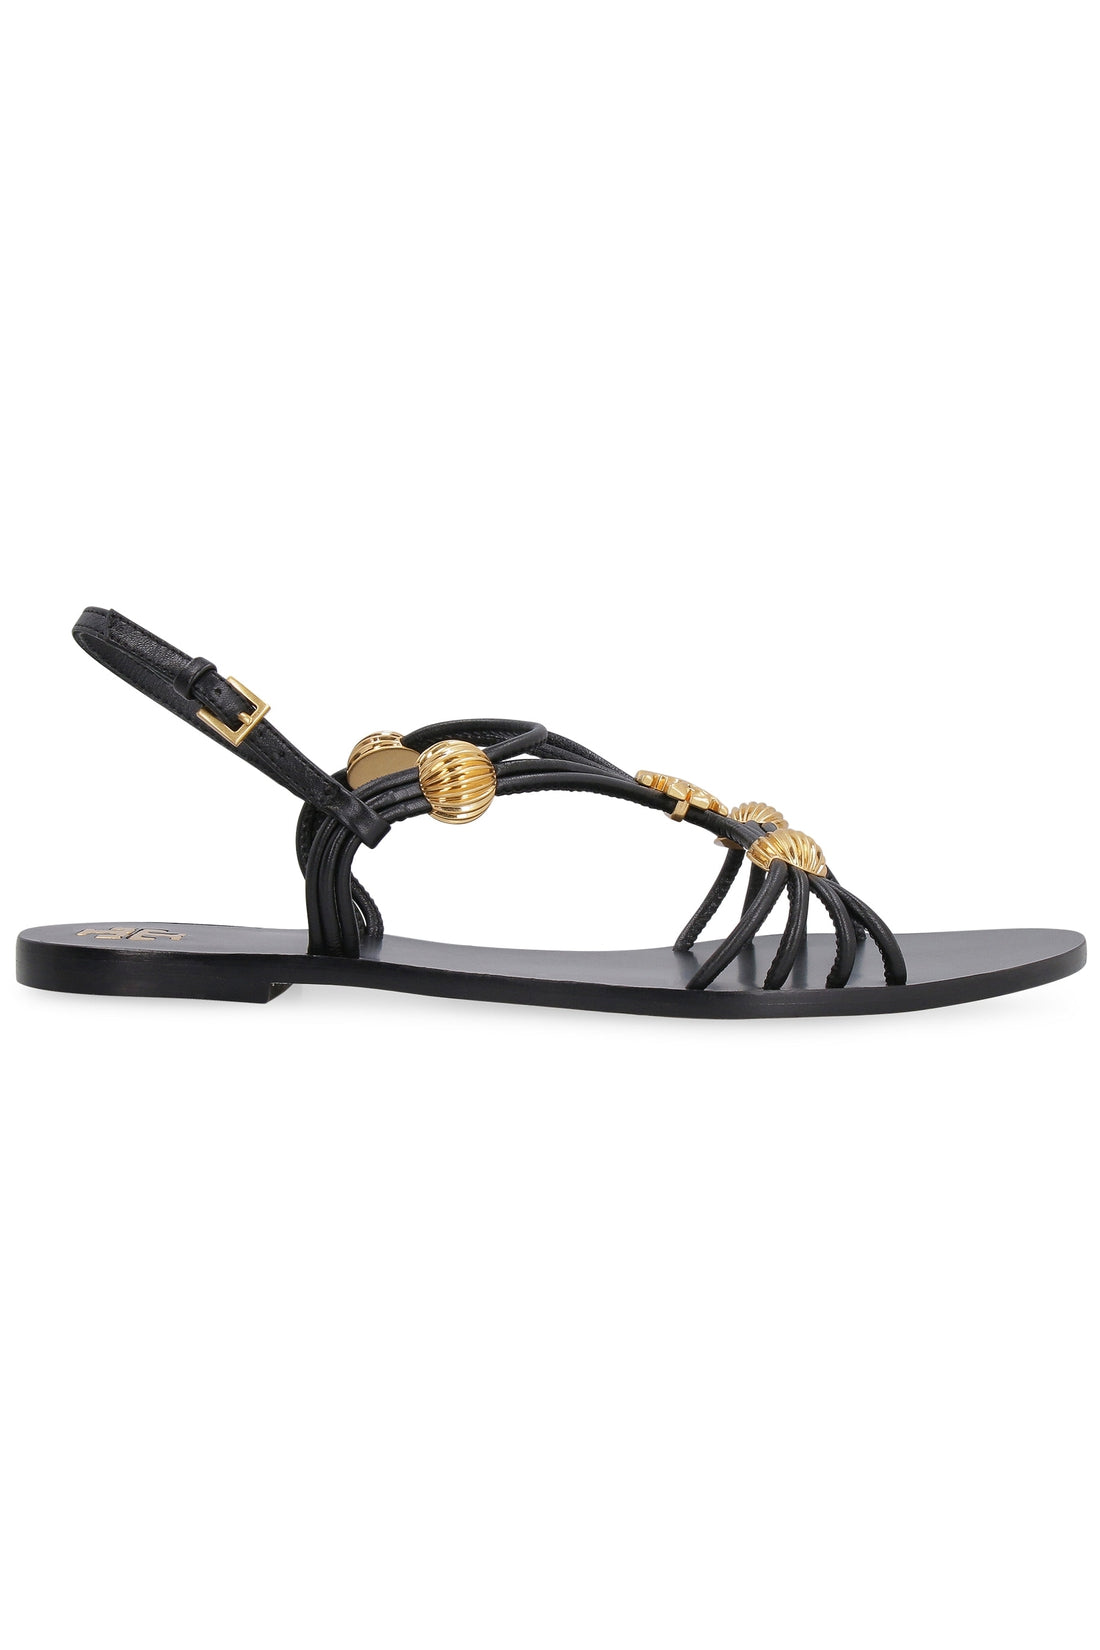 Tory Burch-OUTLET-SALE-Capri leather flat sandals-ARCHIVIST